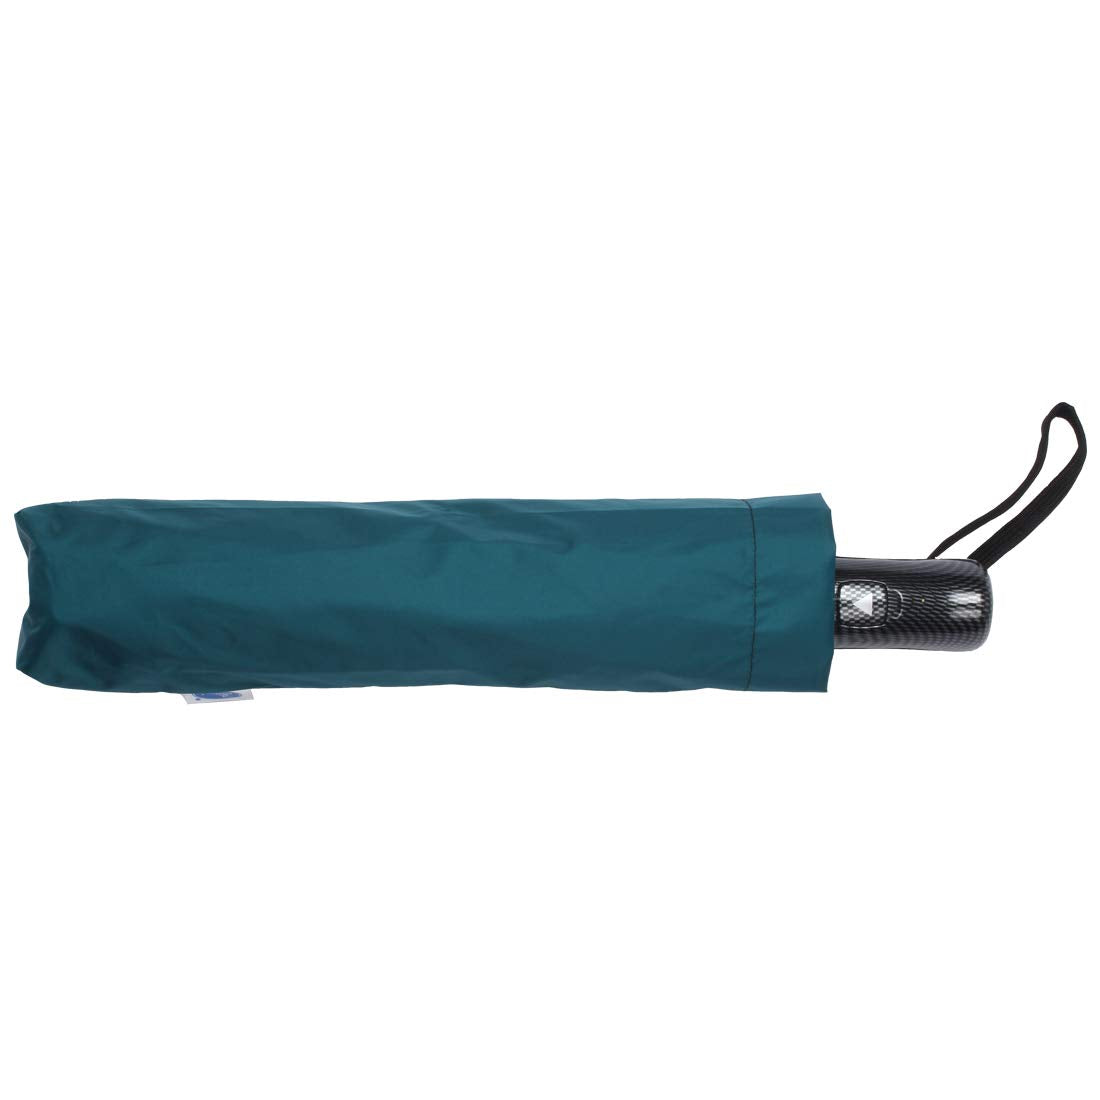 234 -3 Fold Premium Umbrella Dukandaily